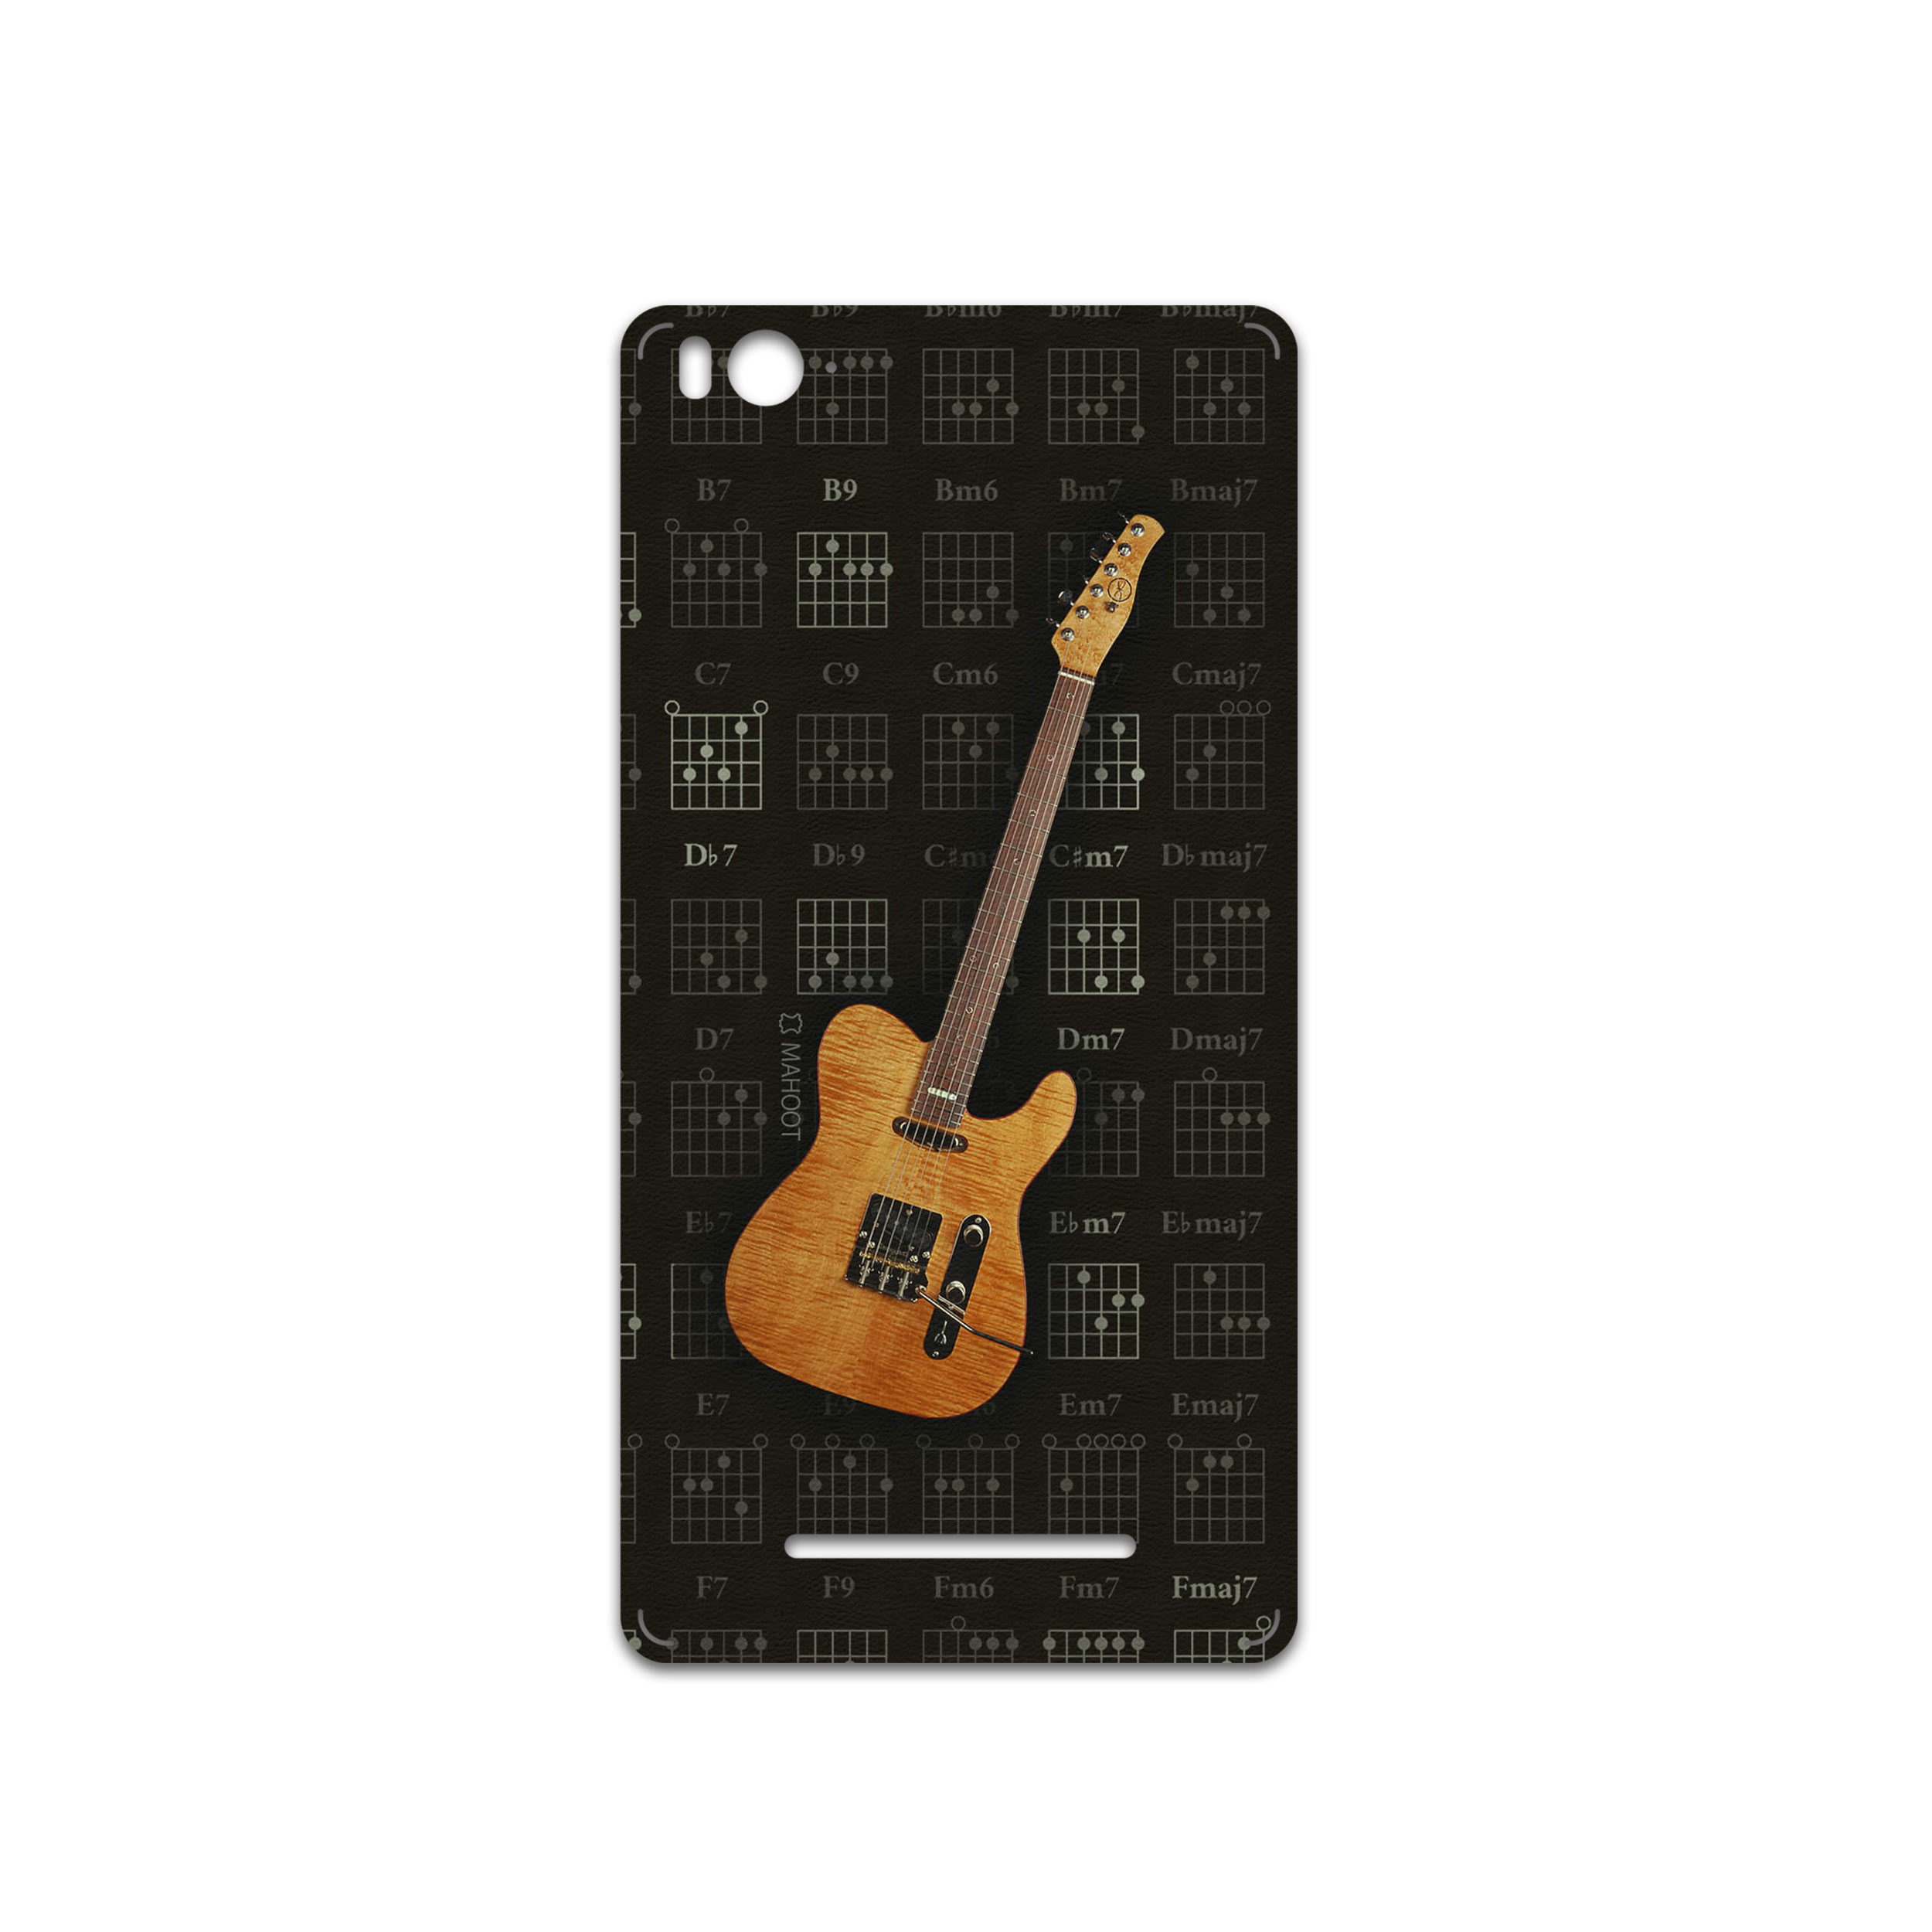 برچسب پوششی ماهوت مدل Guitar-Instrument مناسب برای گوشی موبایل شیائومی Mi 4c